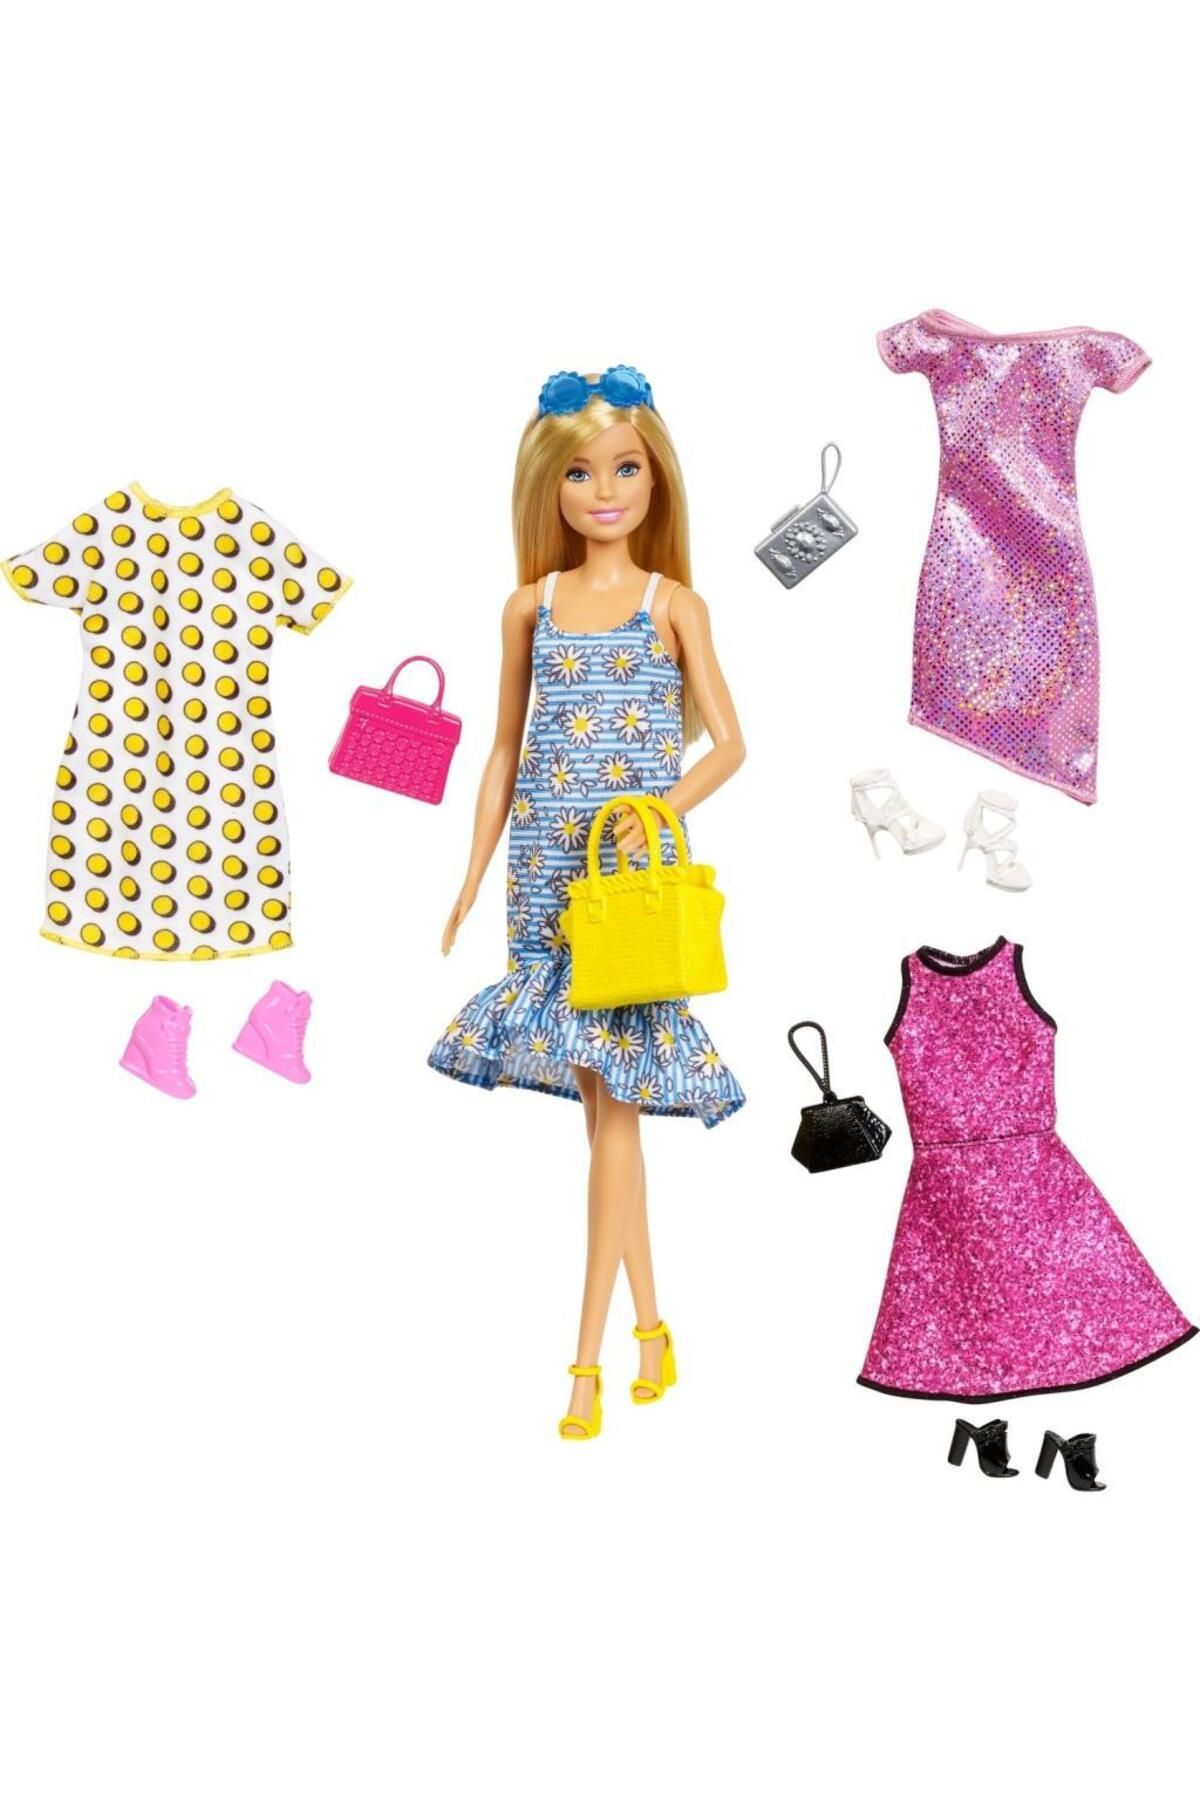 Barbie 'nin Kıyafet Kombinleri Oyun Seti Gdj40 OY.0887961744545